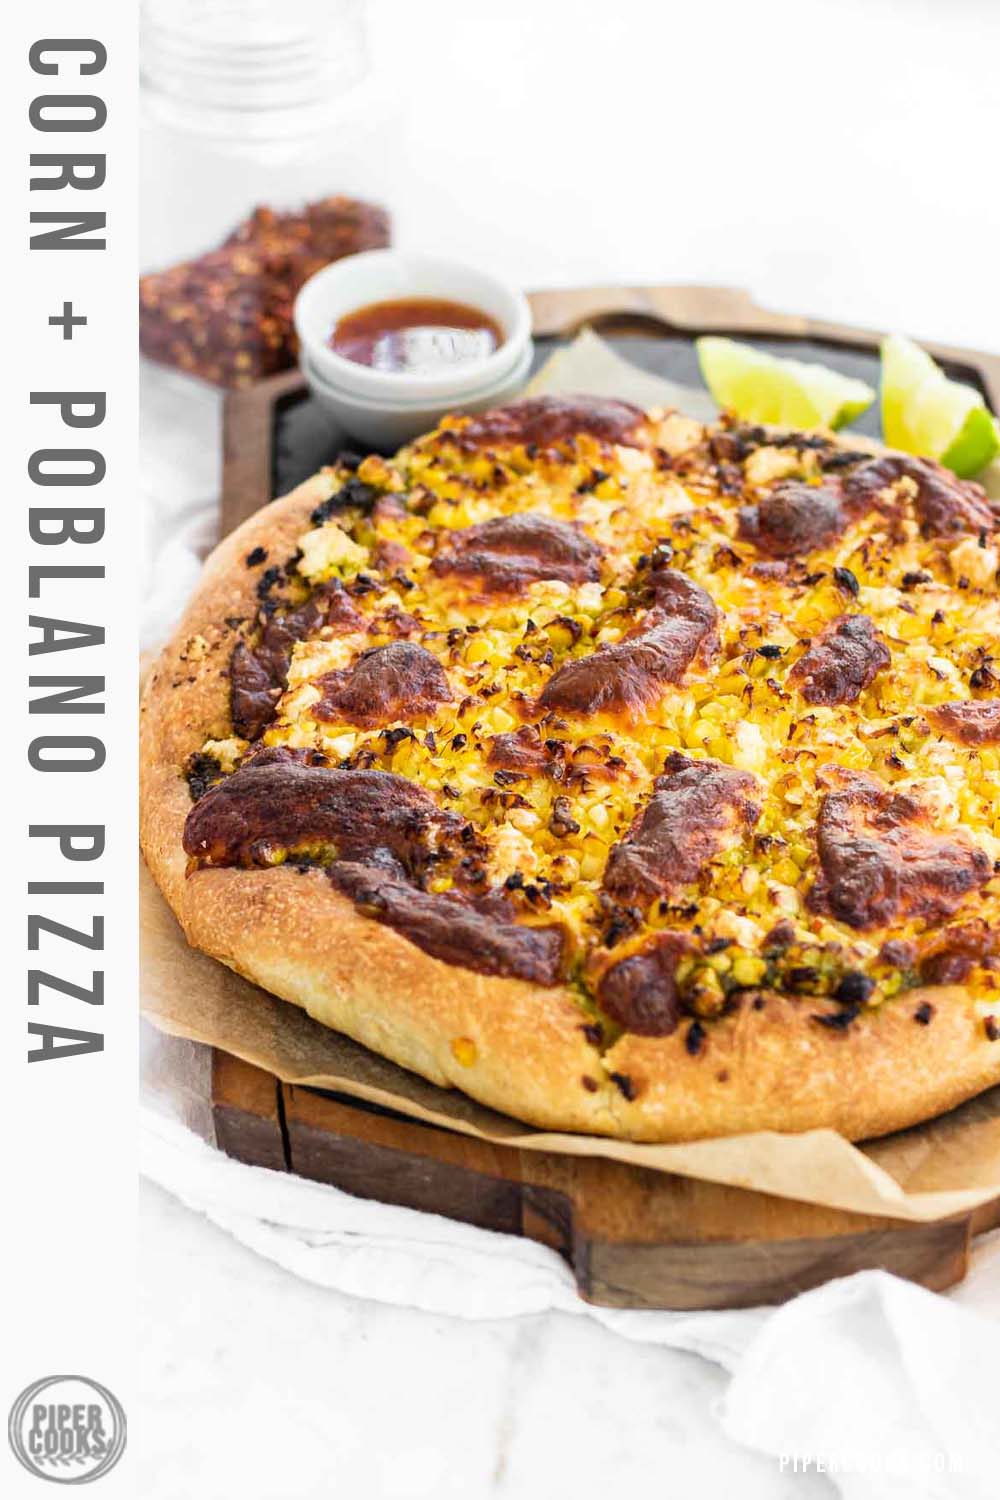 A corn pizza on a slate platter.